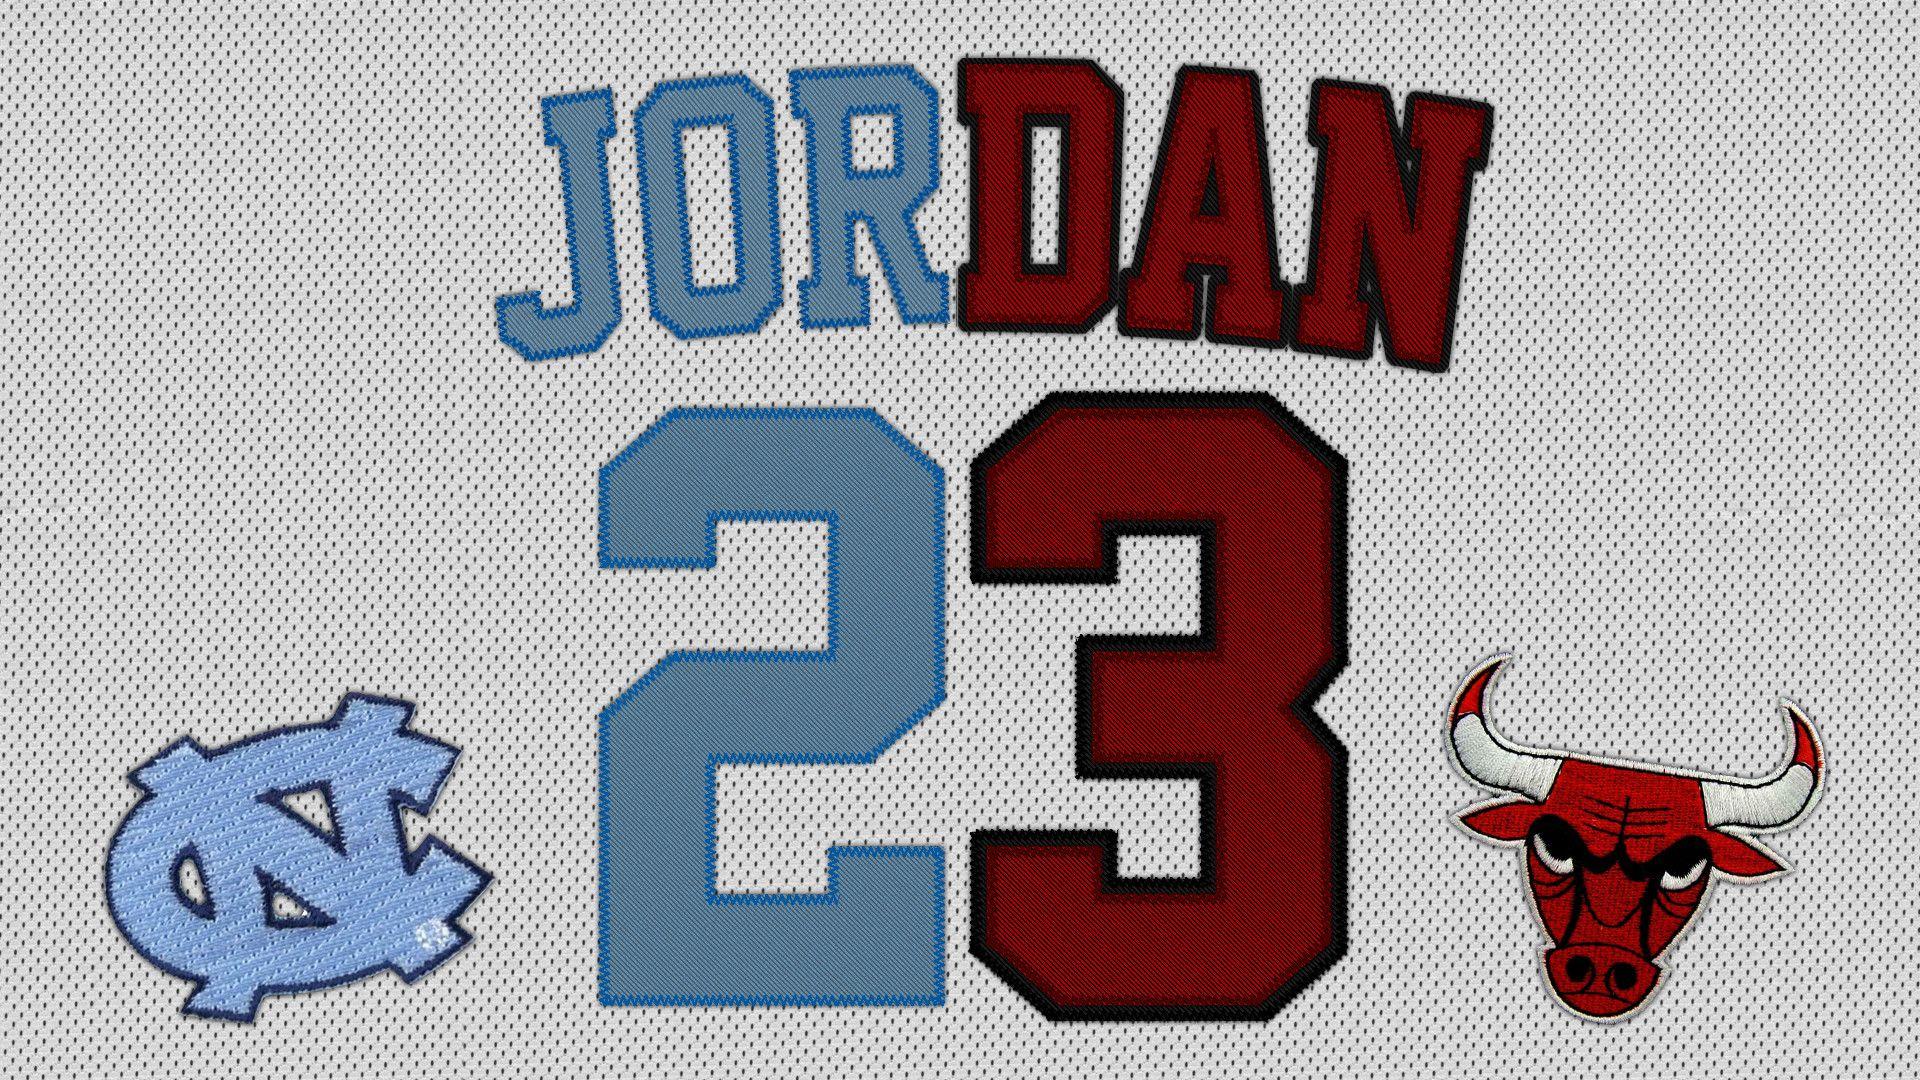 Bull Jordan 23 Logo - Jordan 23 Wallpaper